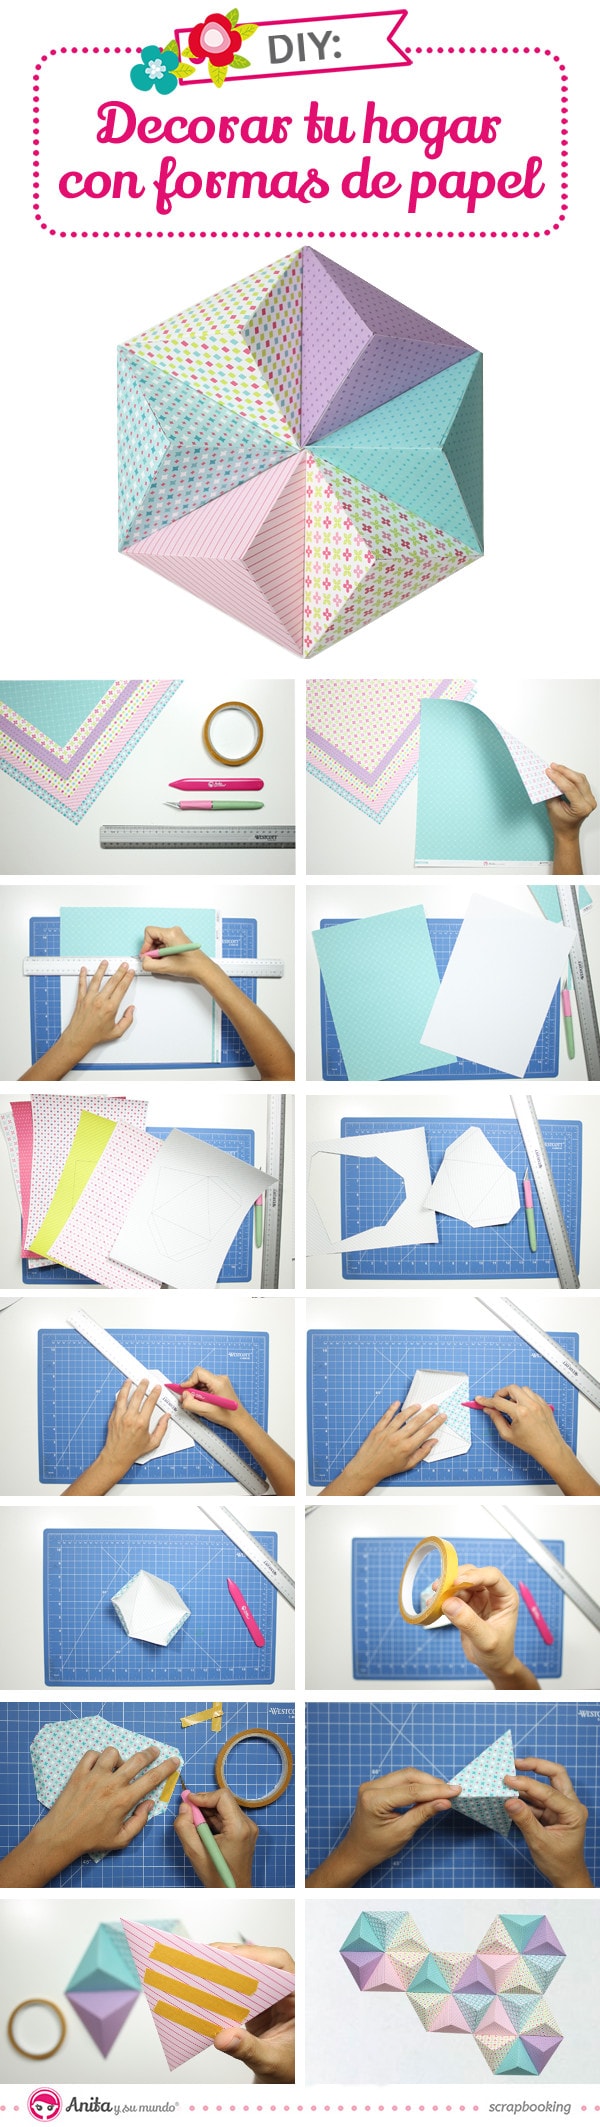 tutorial para decorar con papel formas geométricas